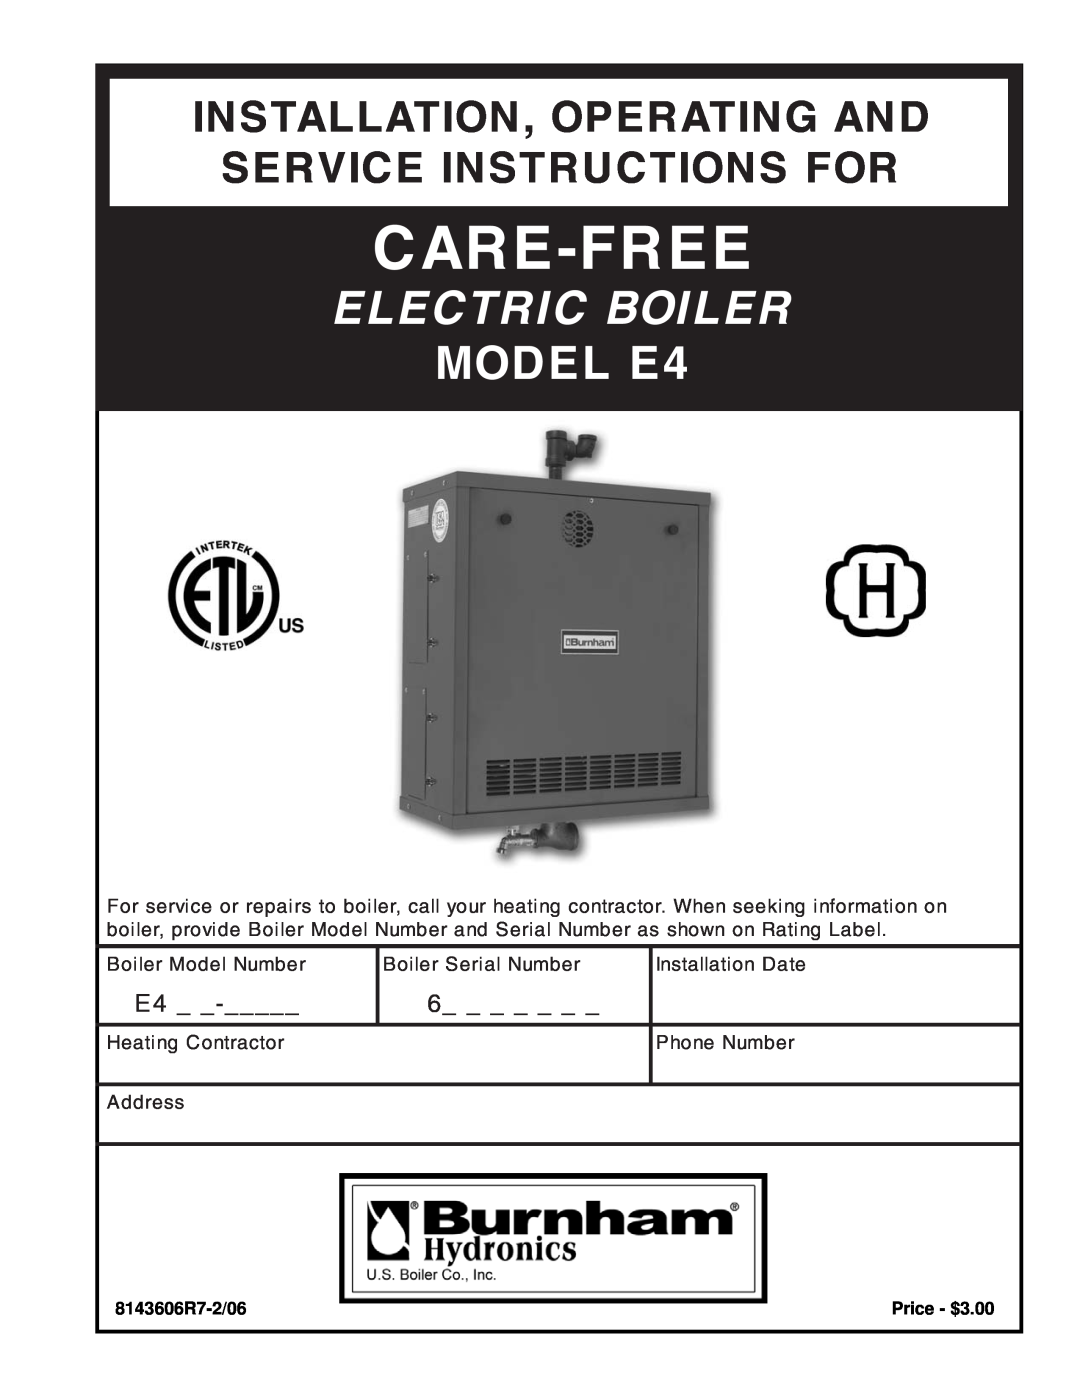 Burnham manual 8143606R7-2/06, Price - $3.00, Care-Free, Electric Boiler, MODEL E4, Boiler Model Number, Phone Number 